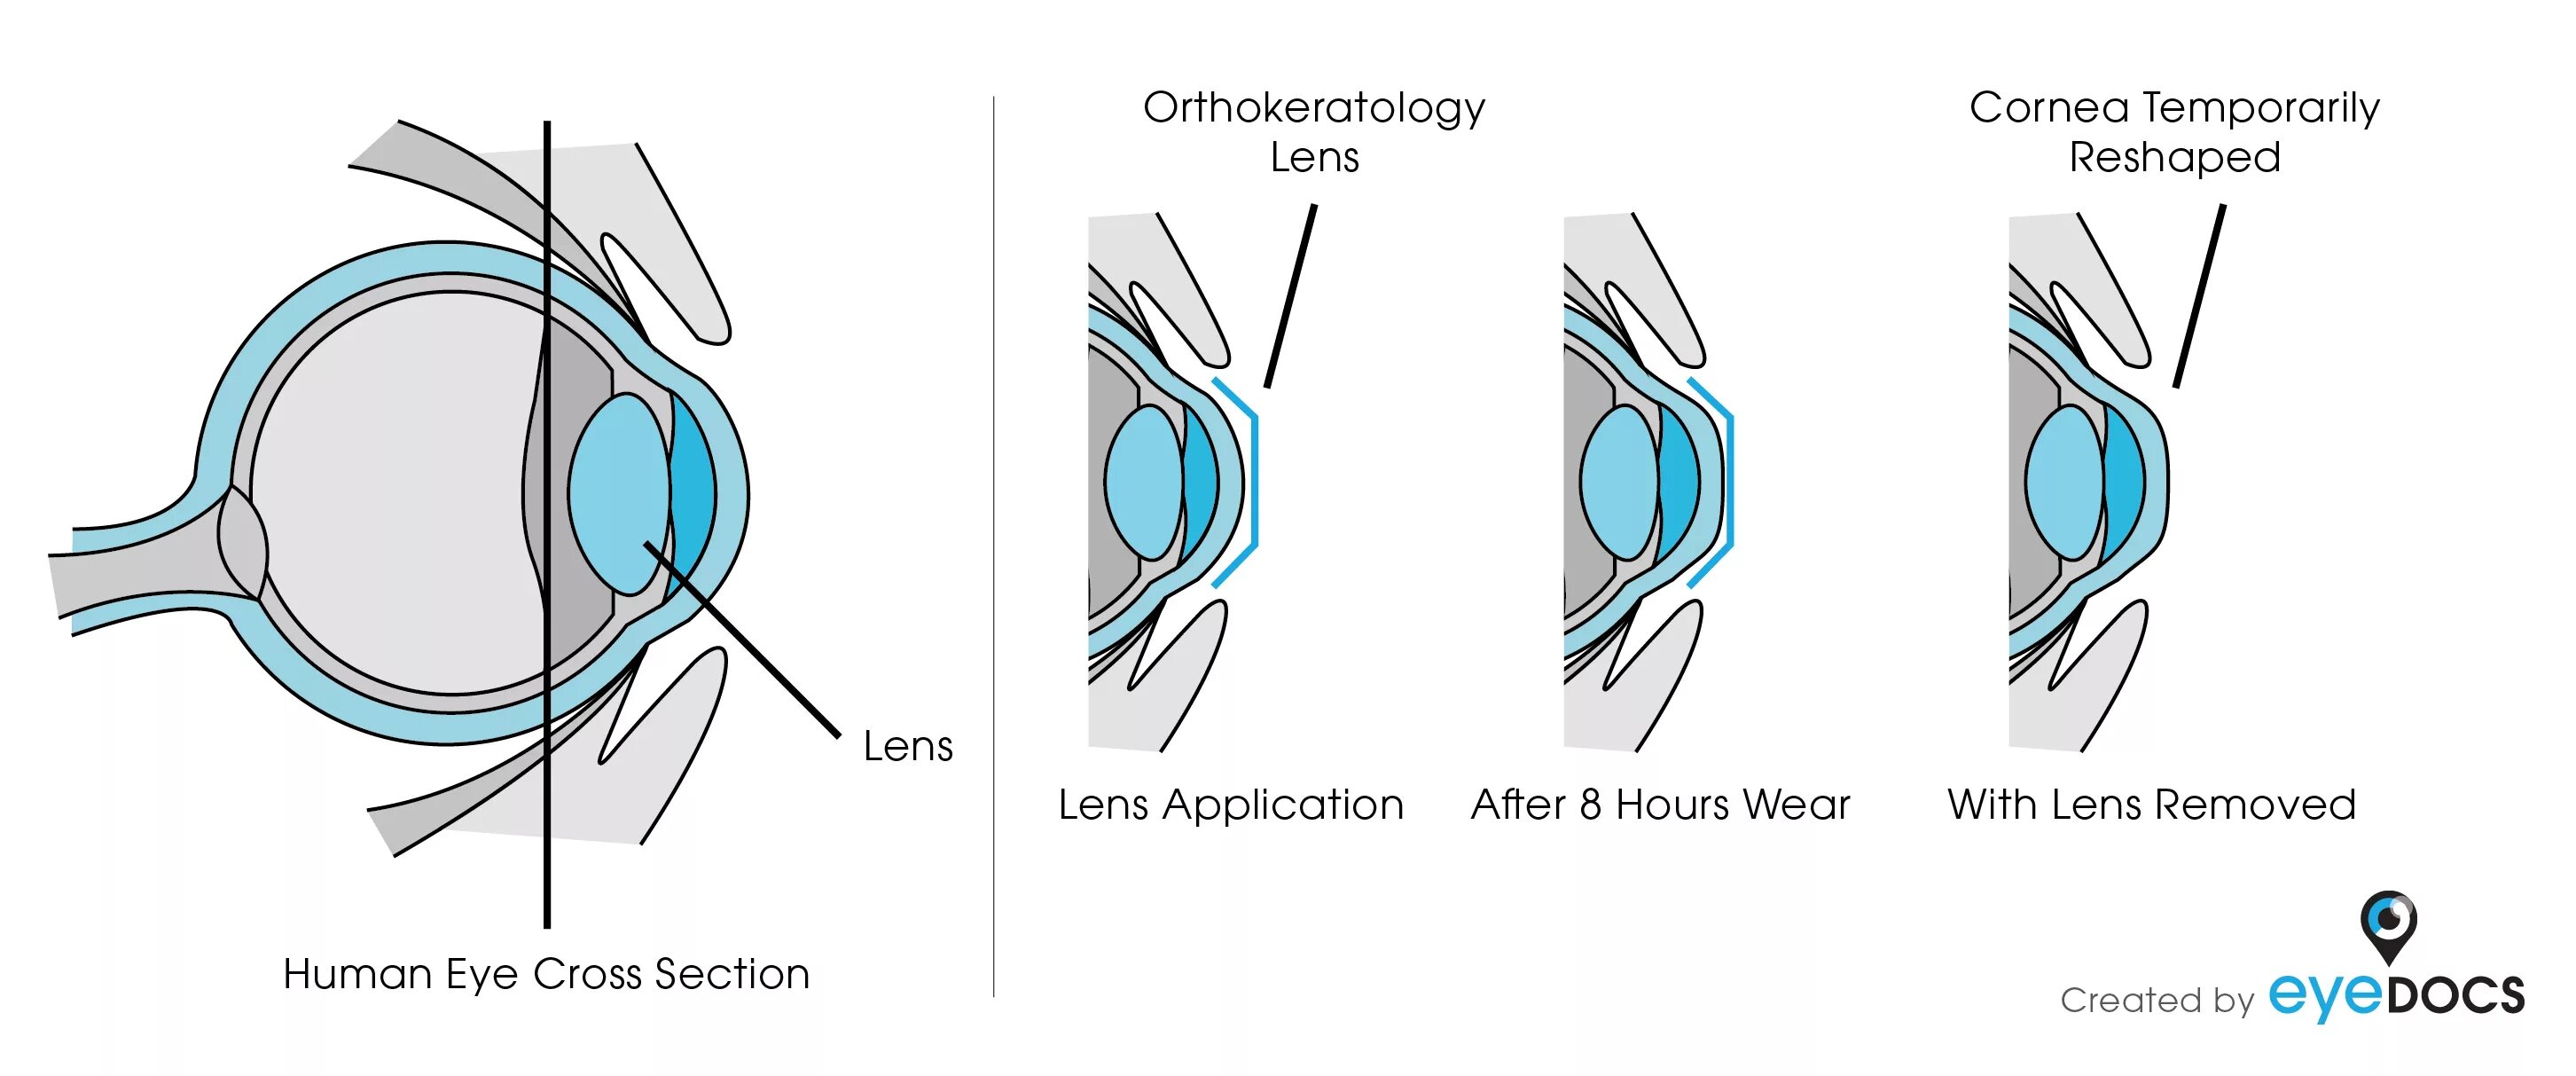 Жесткие ночные ортокератологические линзы. Ортокератология ночные линзы. Ночные жесткие линзы для восстановления зрения. Как работают ортокератологические линзы.